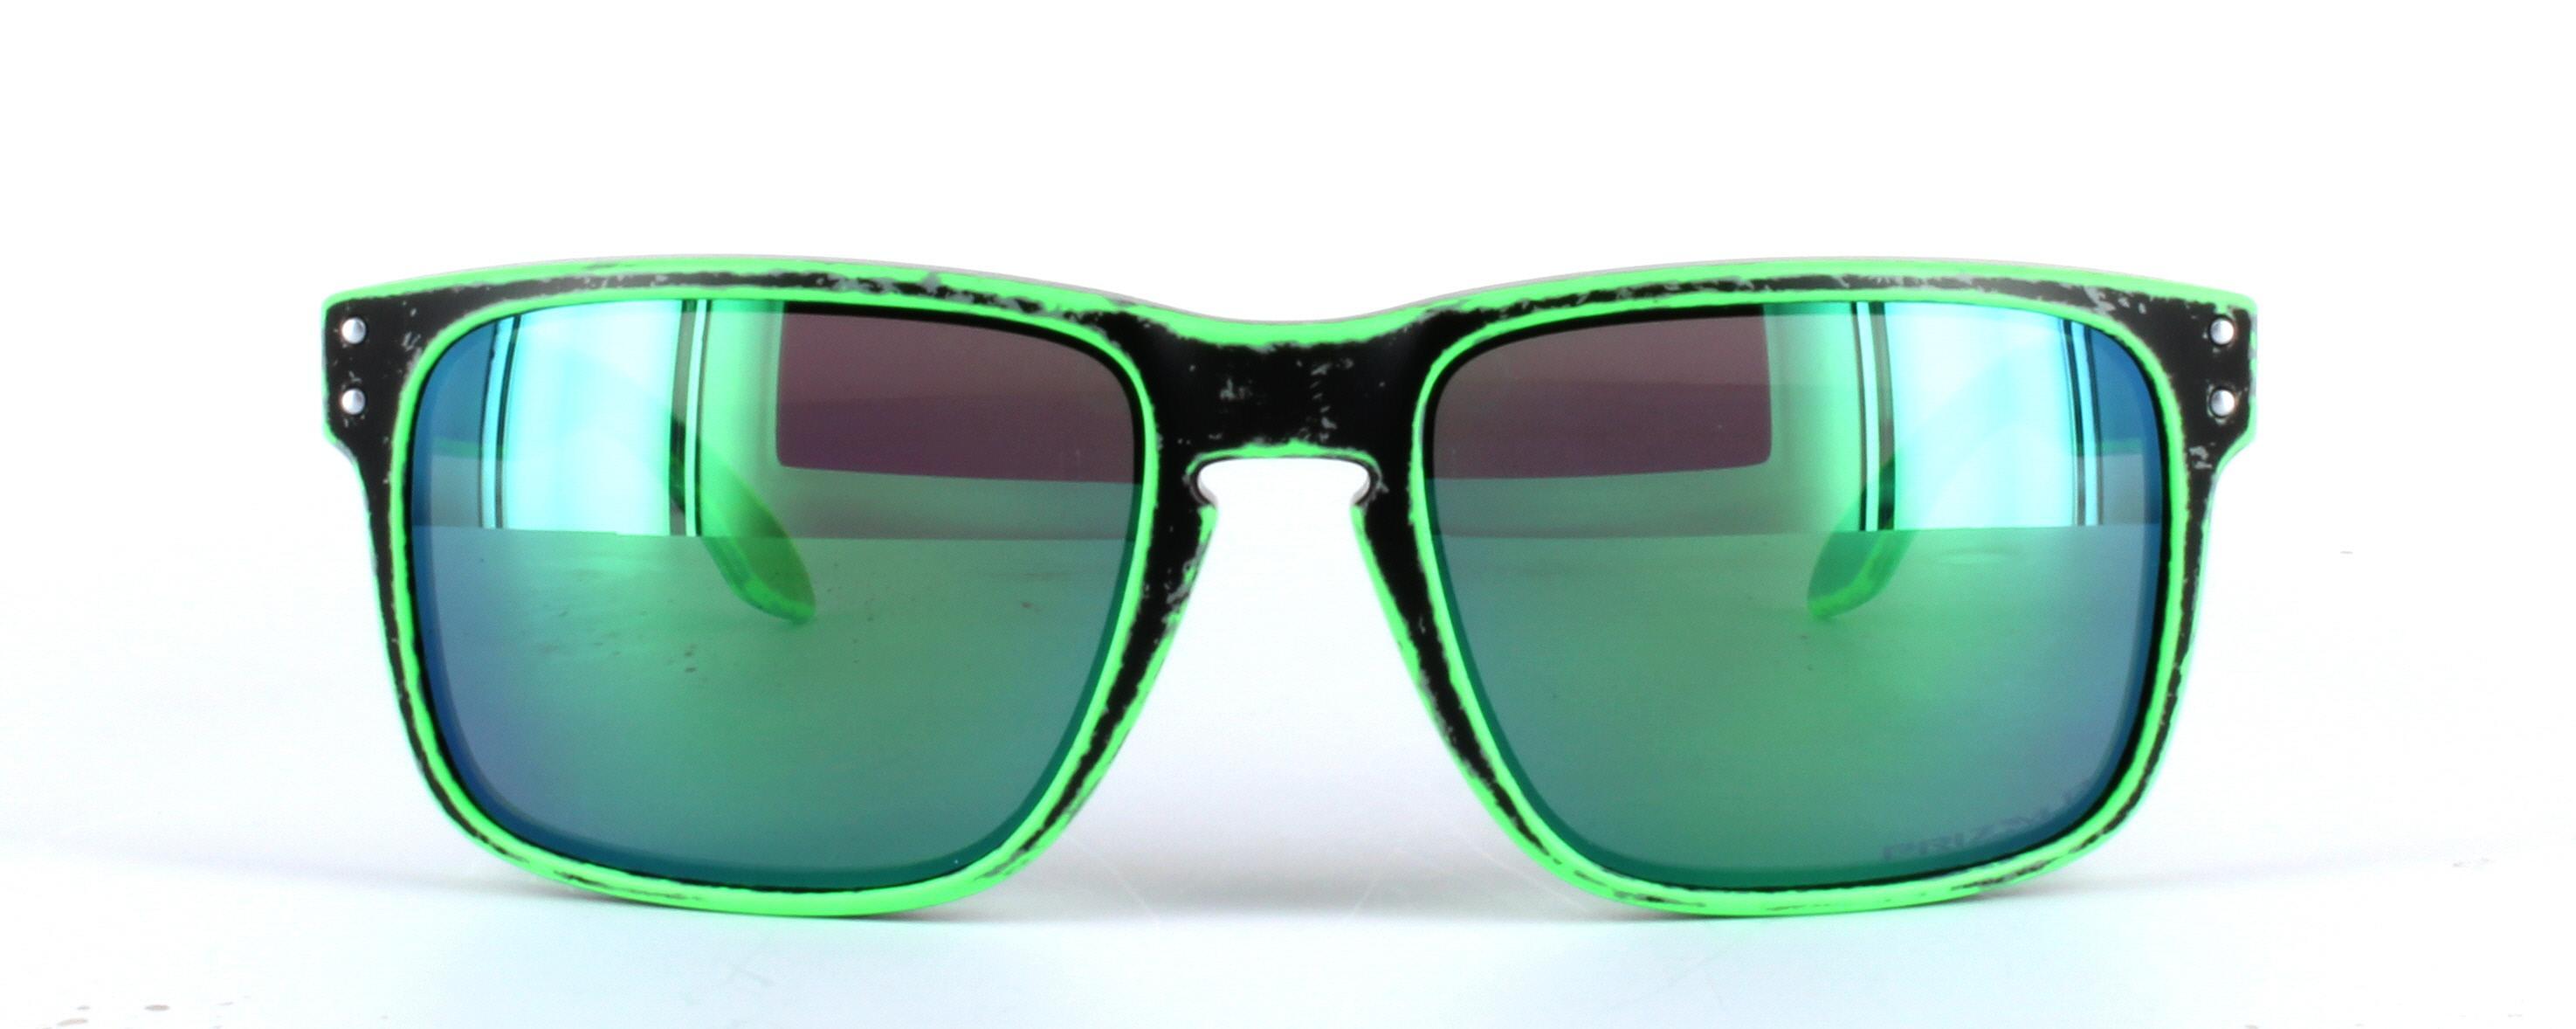 Oakley (9102) Black Full Rim Plastic Prescription Sunglasses - Image View 5